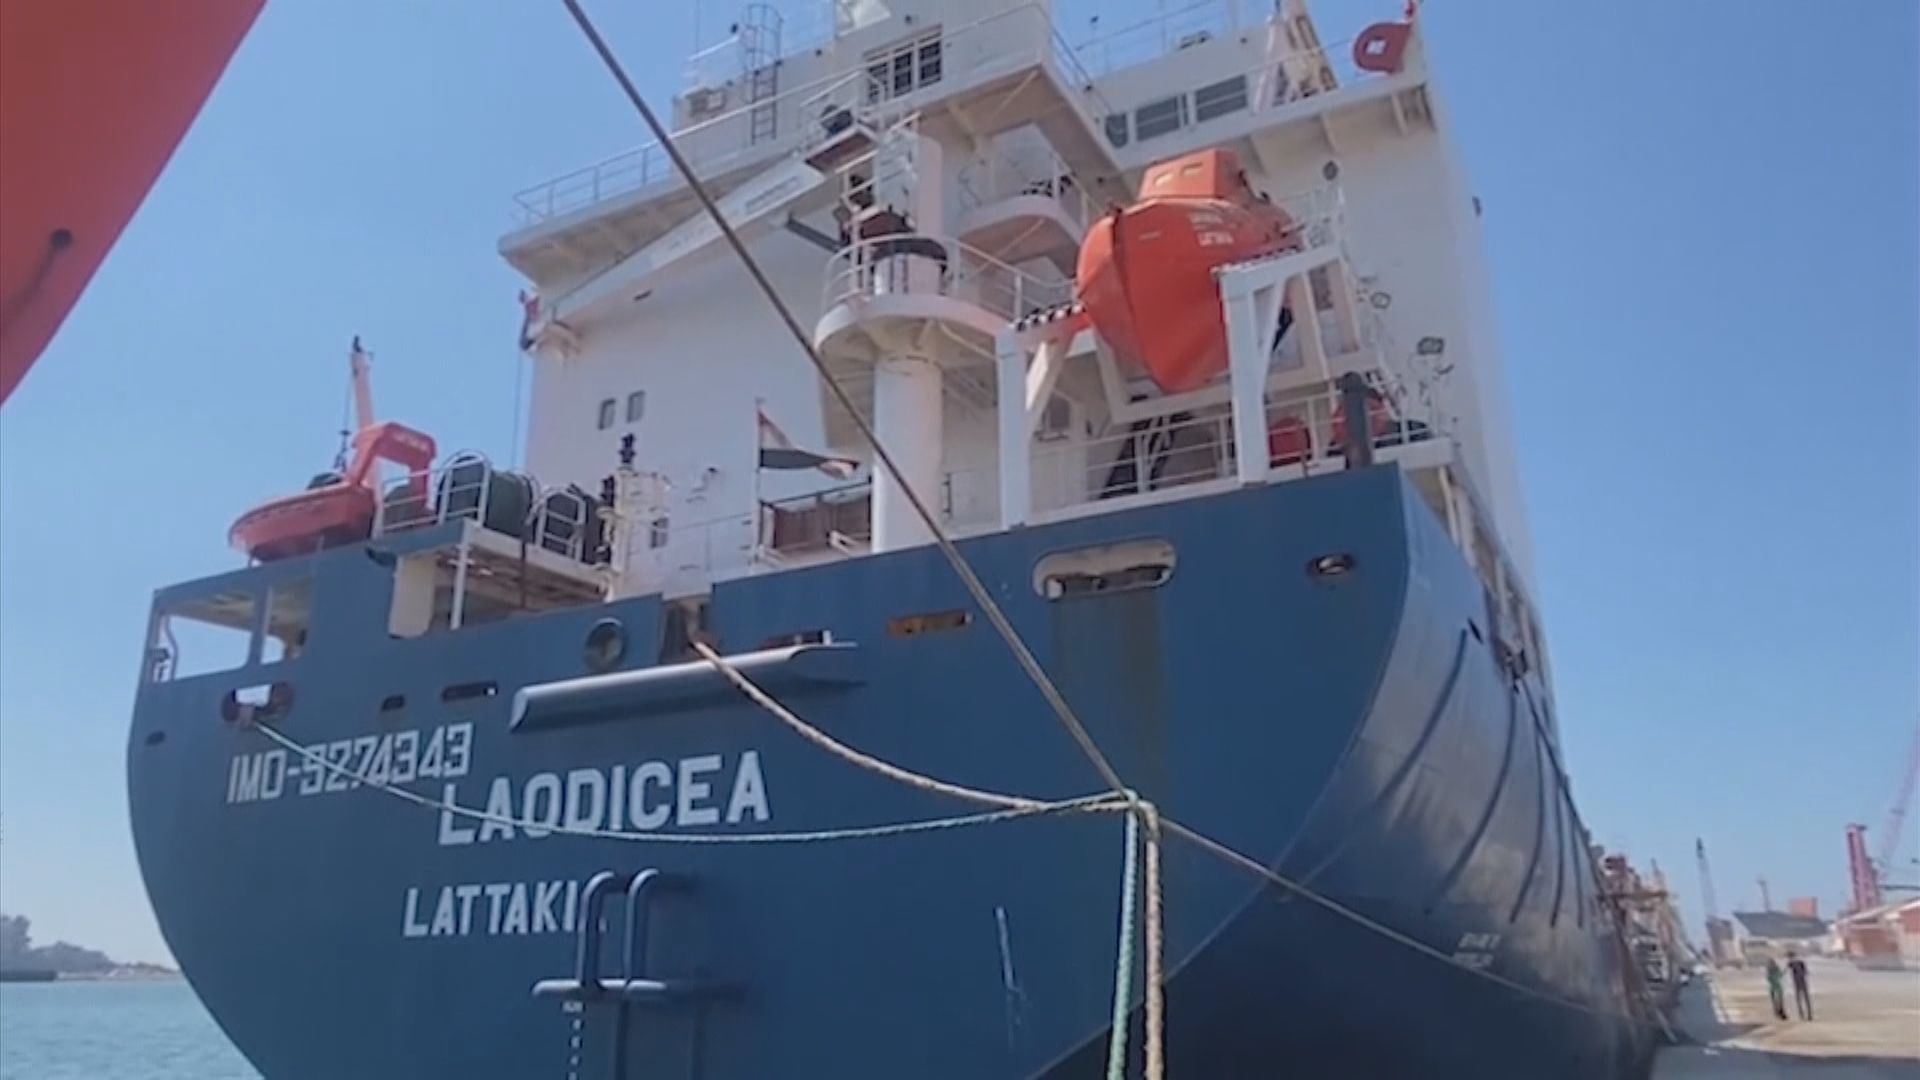 烏克蘭首艘運載穀物貨船通過檢查後正前往黎巴嫩